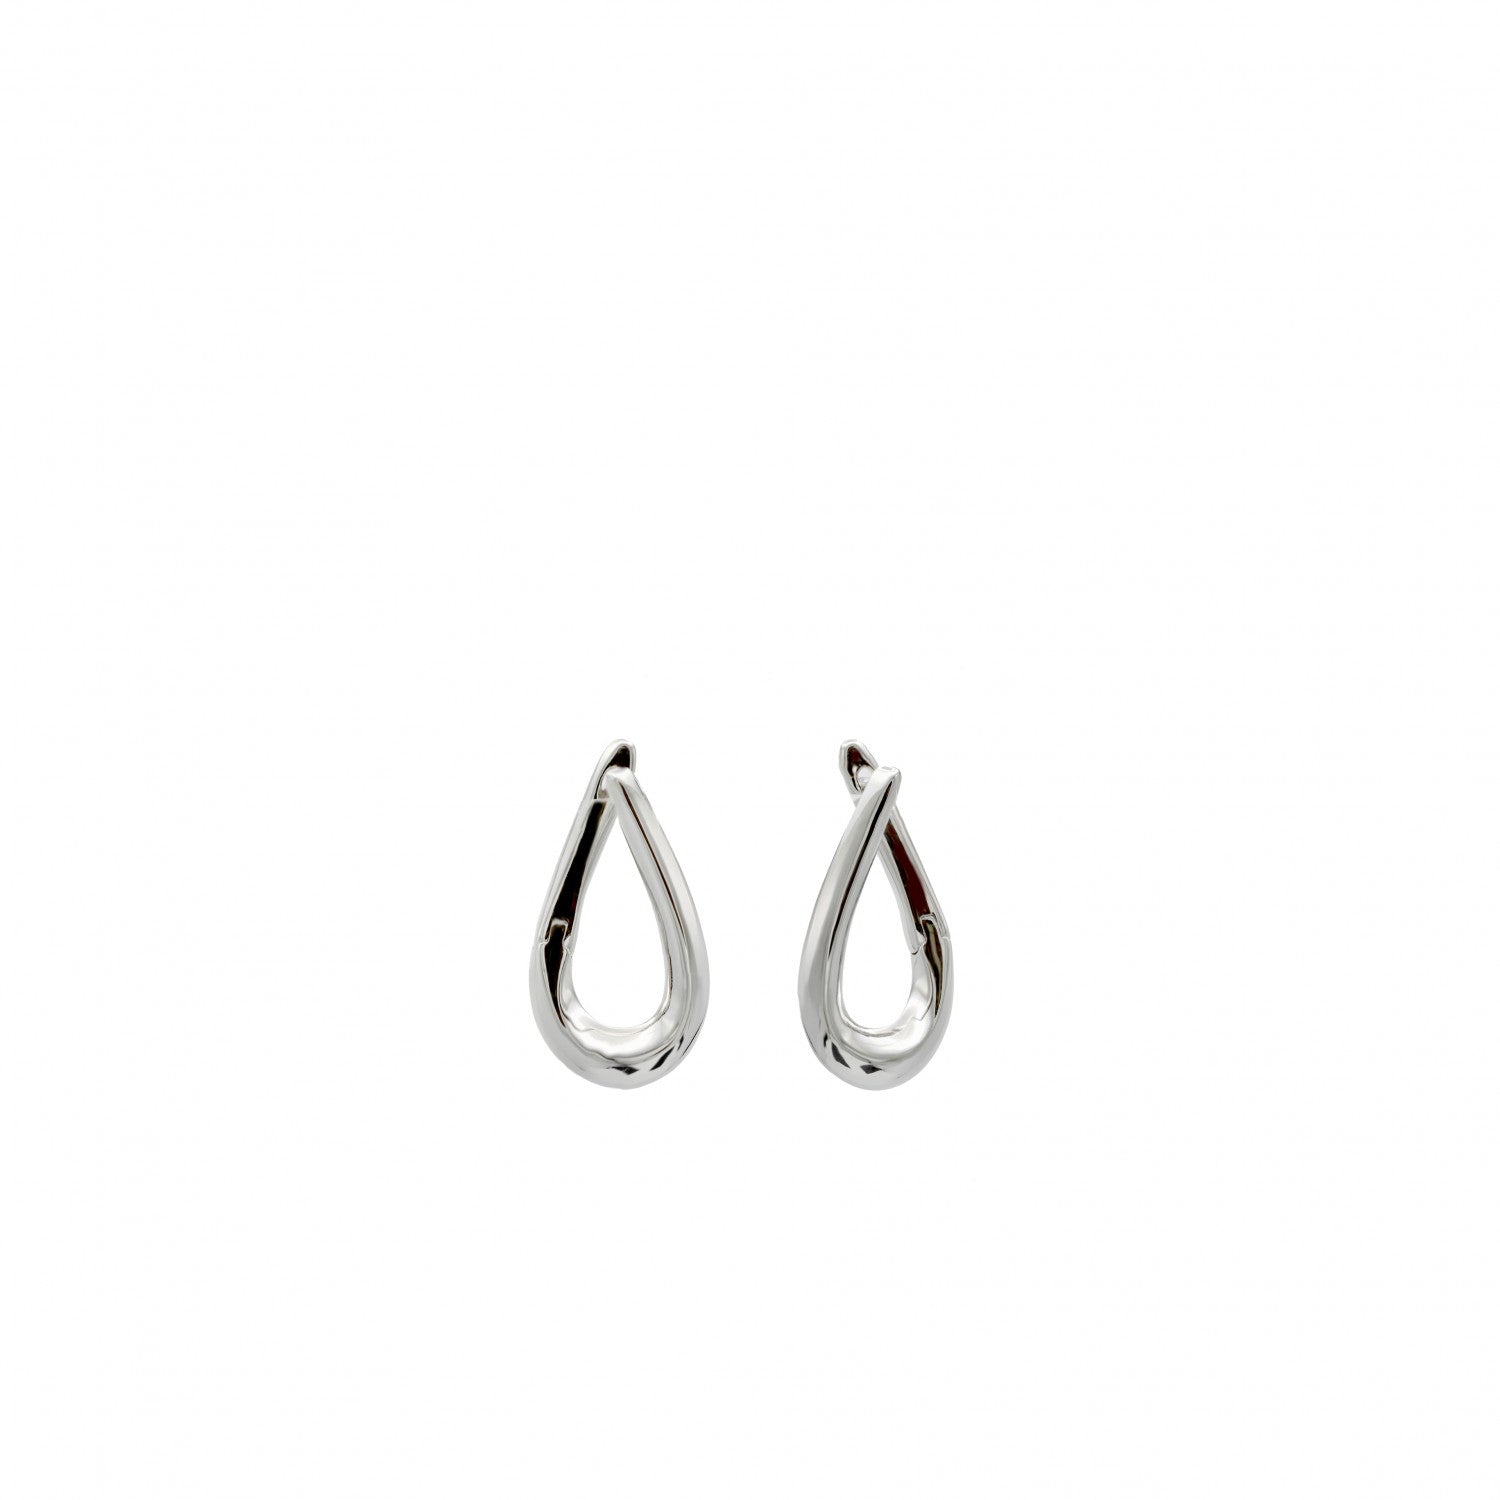 Earrings - Original earrings in plain silver oval design